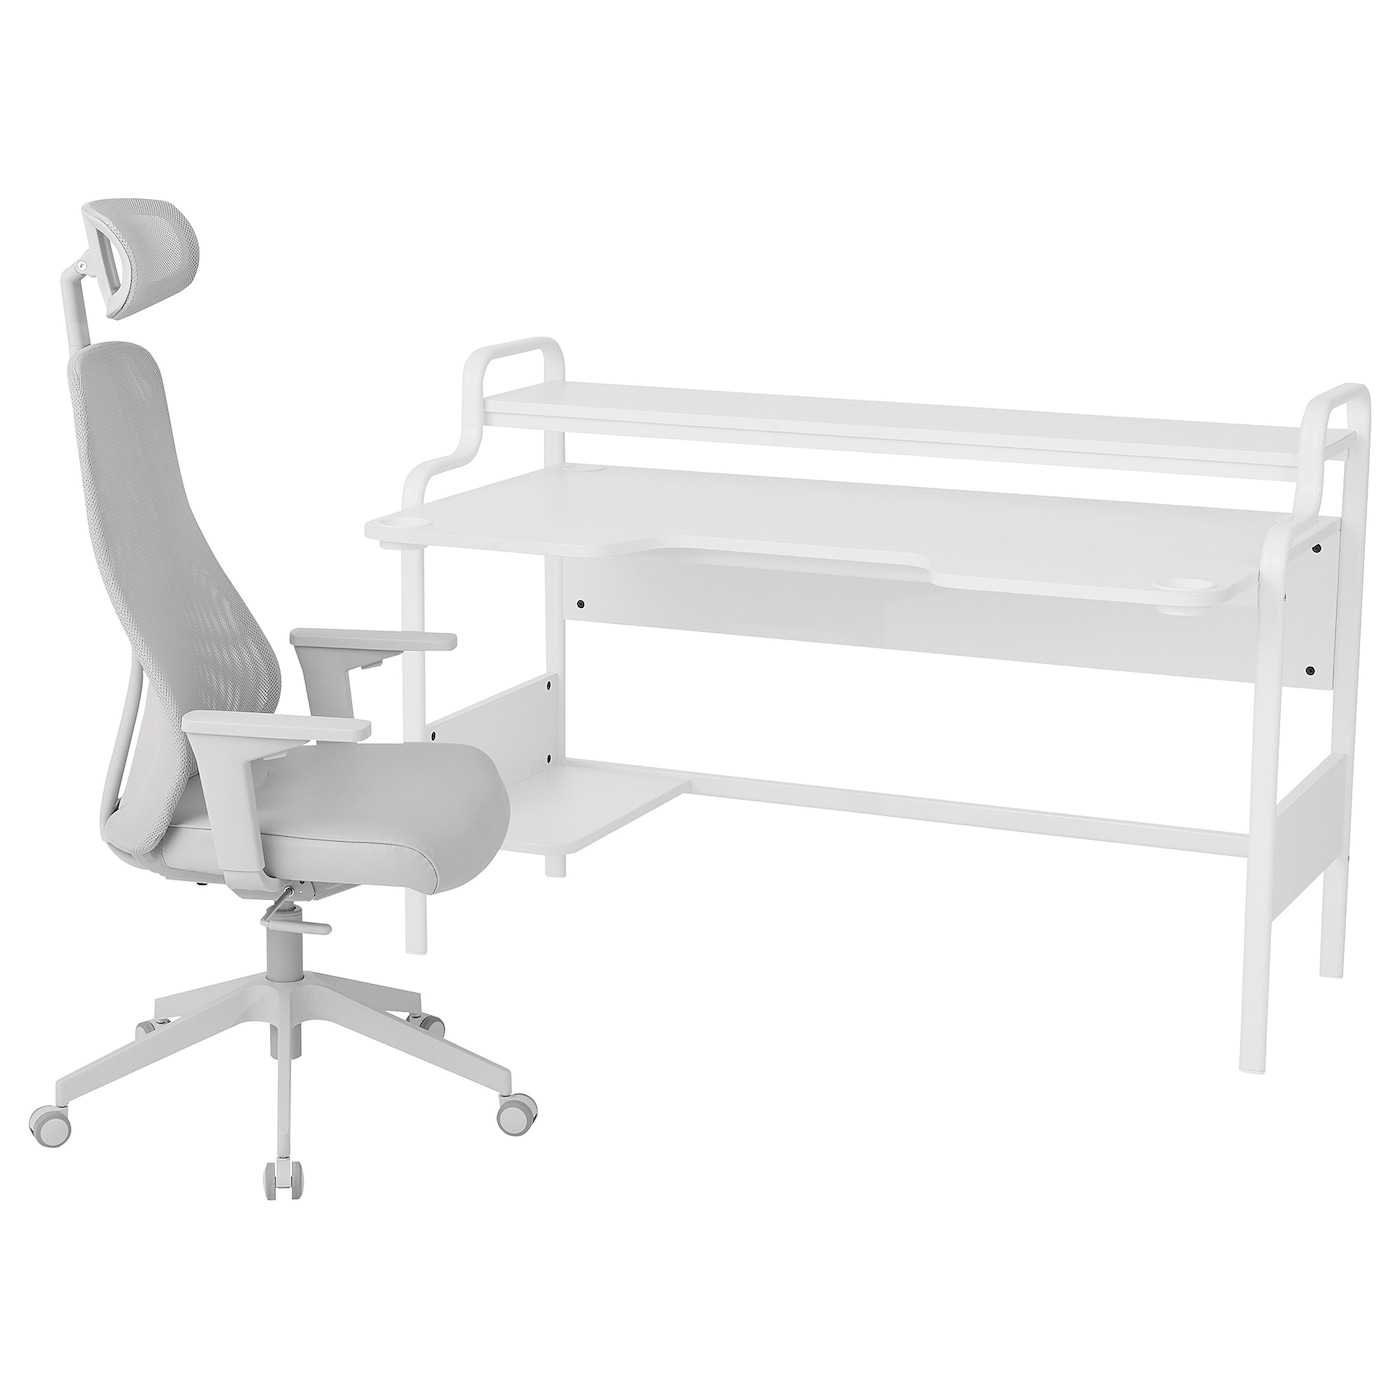 Игровой стол и стул - IKEA FREDDE / MATCHSPEL, белый/серый, ФПЕДДЕ/МАТЧСПЕЛ ИКЕА